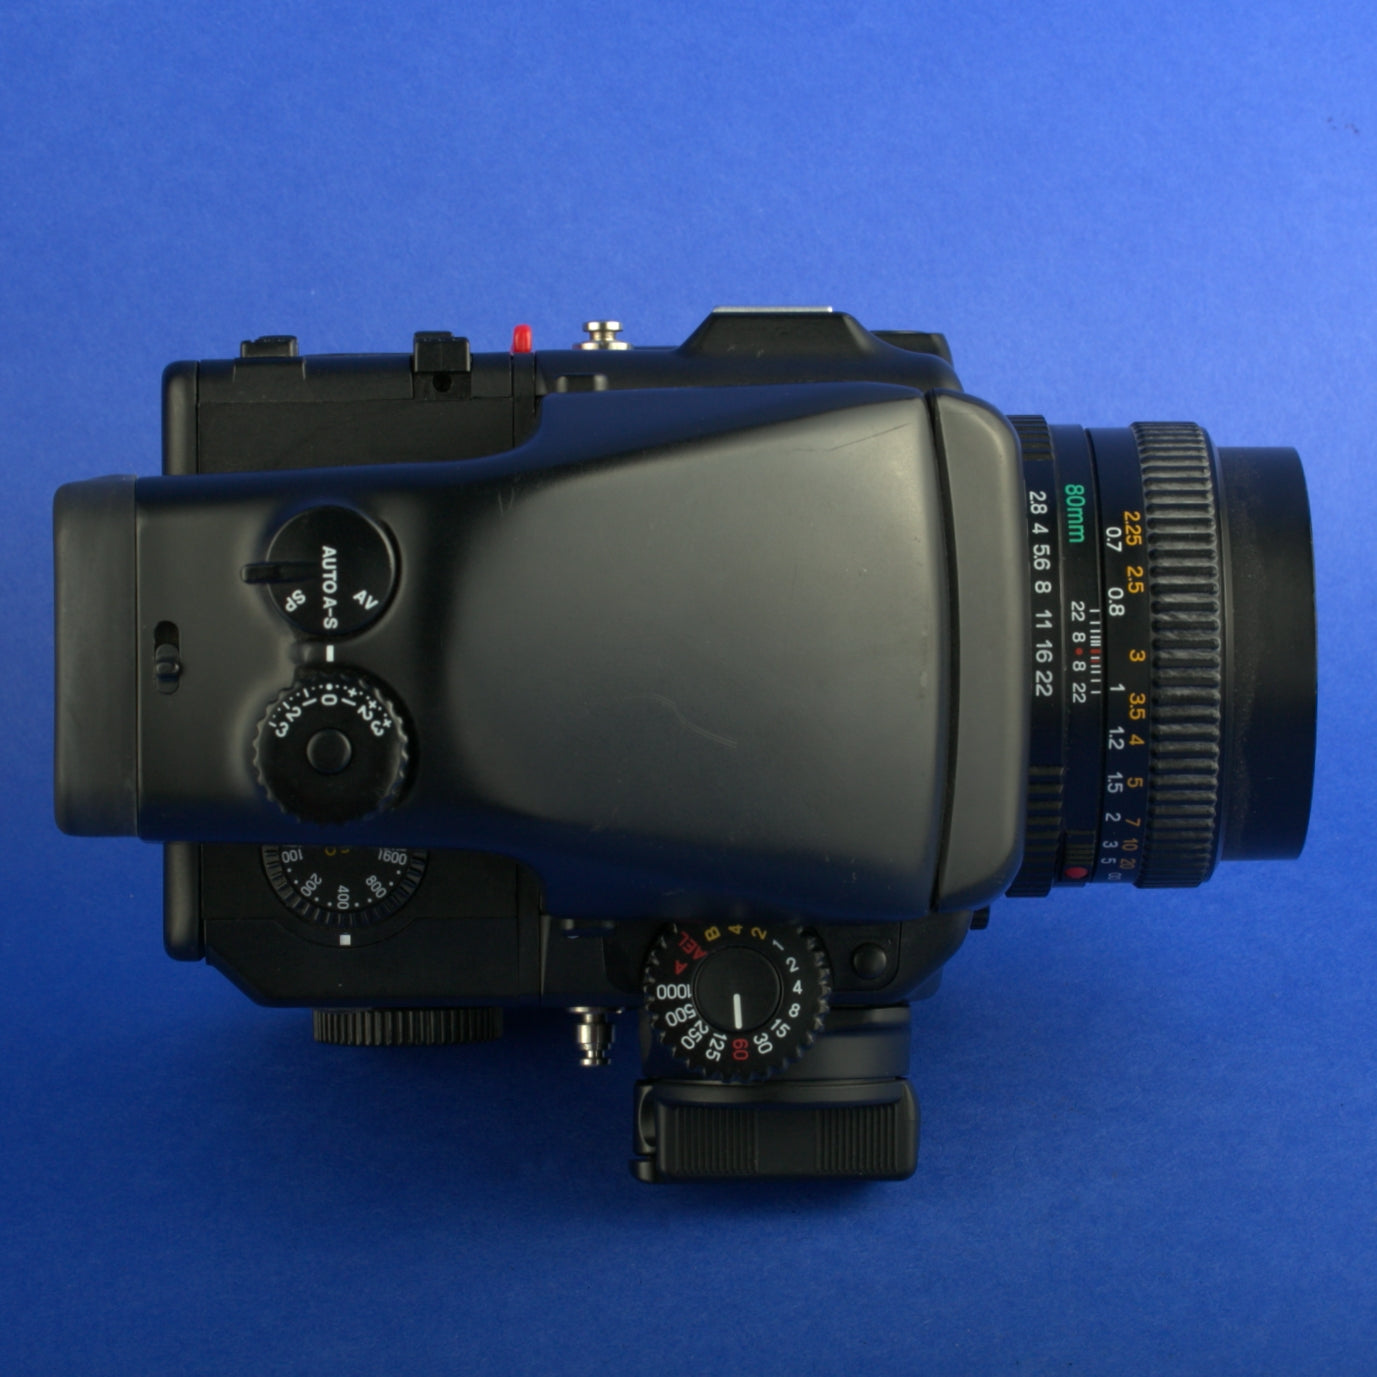 Mamiya 645 Pro TL Medium Format Camera Kit